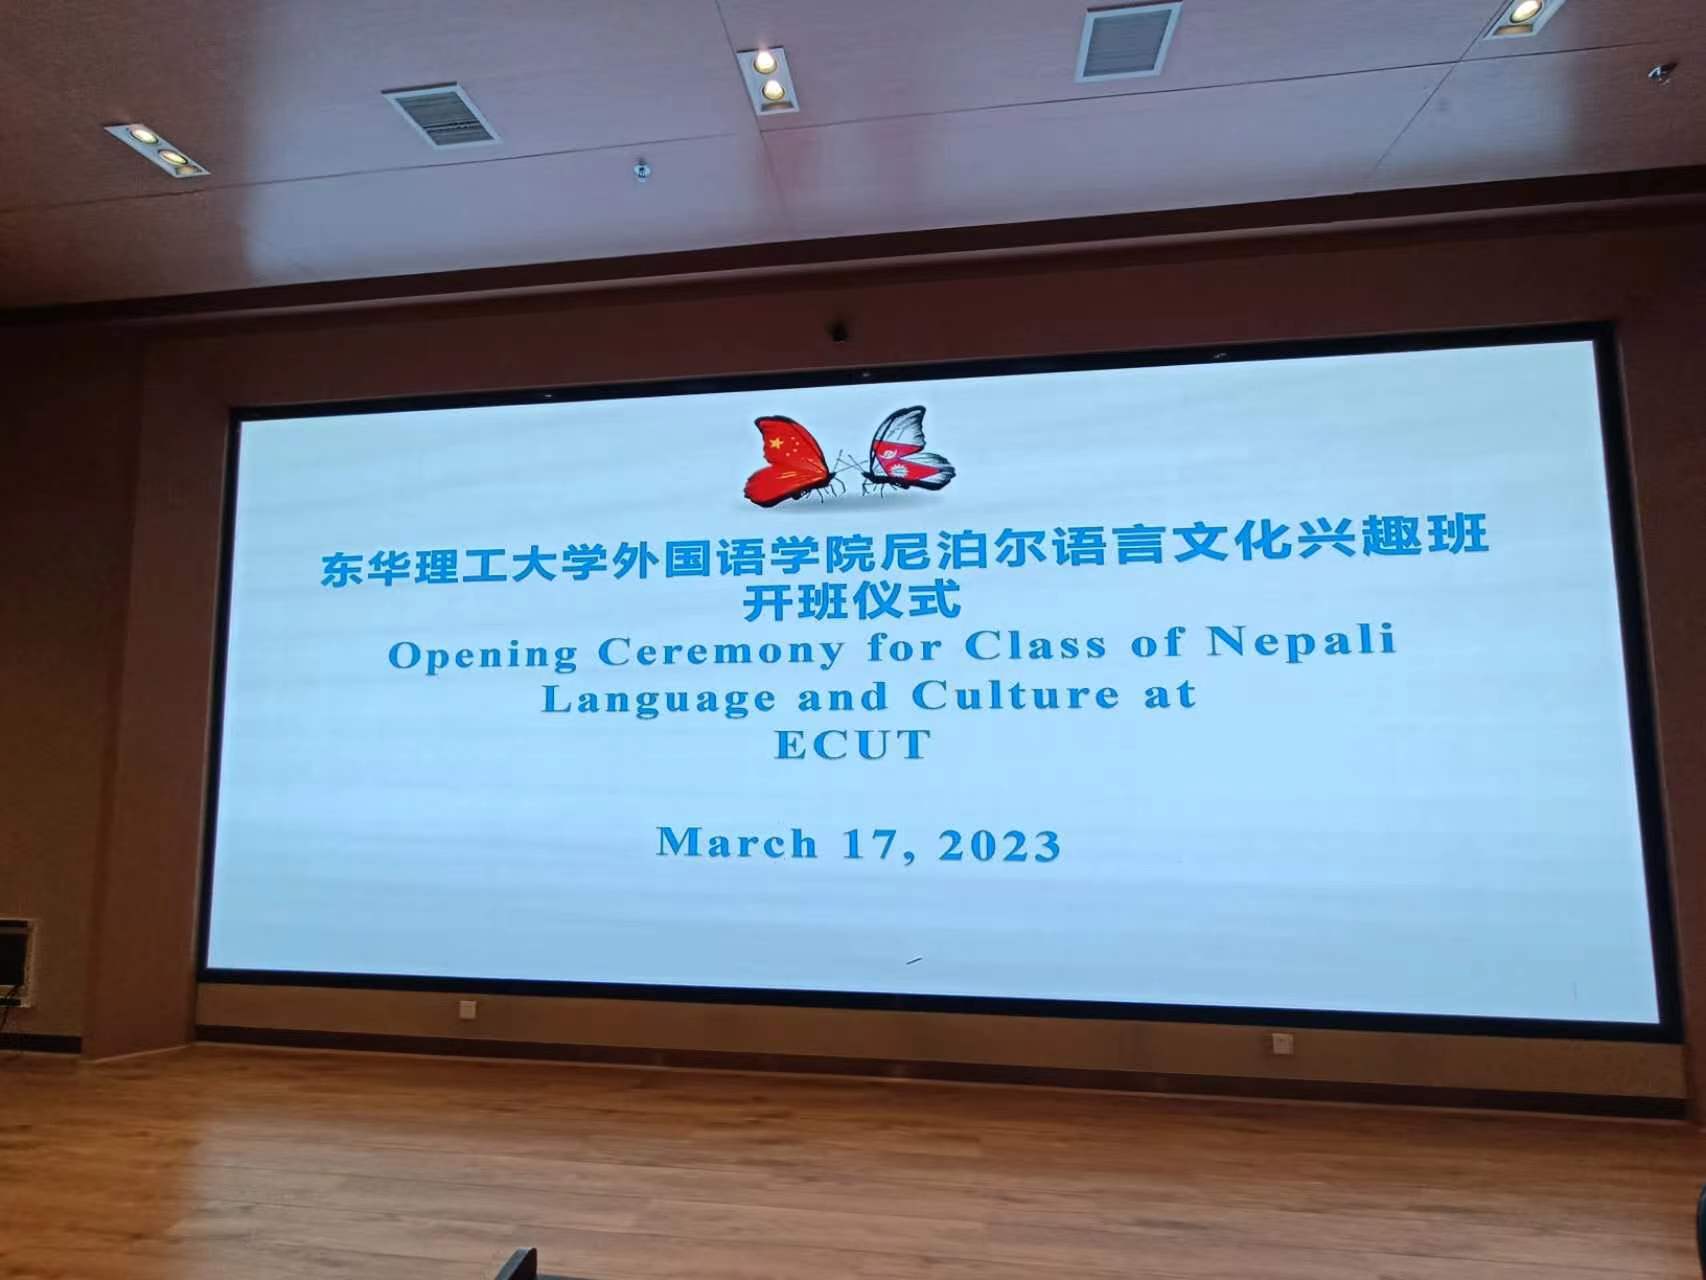 चीनको नानछाङस्थित विश्वविद्यालयमा खुल्यो नेपाली भाषा कक्षा